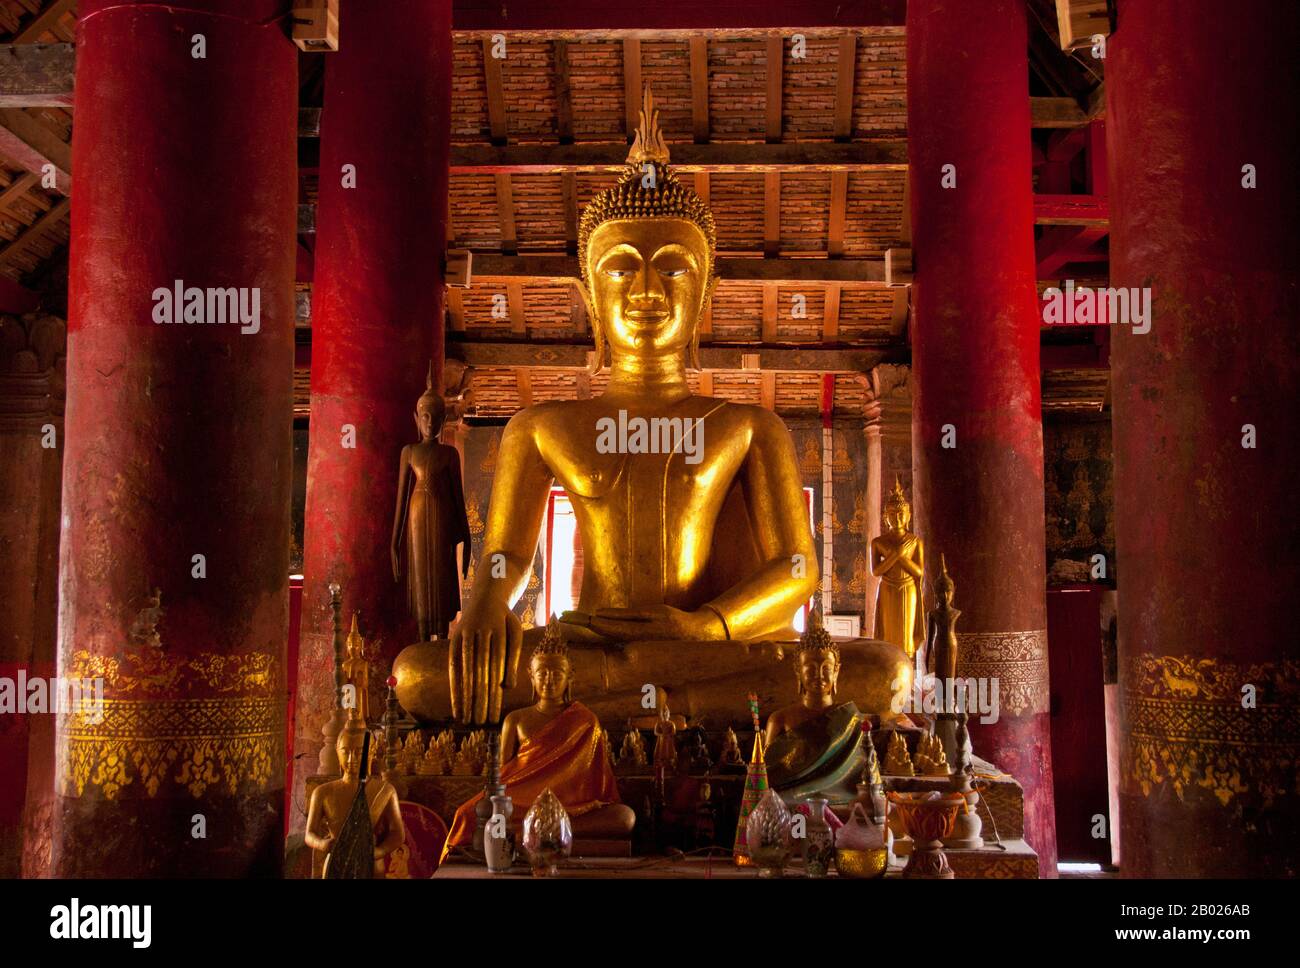 Wat Pak Khan wurde ursprünglich Mitte des 18. Jahrhunderts erbaut. Luang Prabang war früher die Hauptstadt eines gleichnamigen Königreichs. Bis zur kommunistischen Machtübernahme 1975 war es die königliche Hauptstadt und Regierungssitz des Königreichs Laos. Die Stadt gehört heute zum UNESCO-Weltkulturerbe. Stockfoto